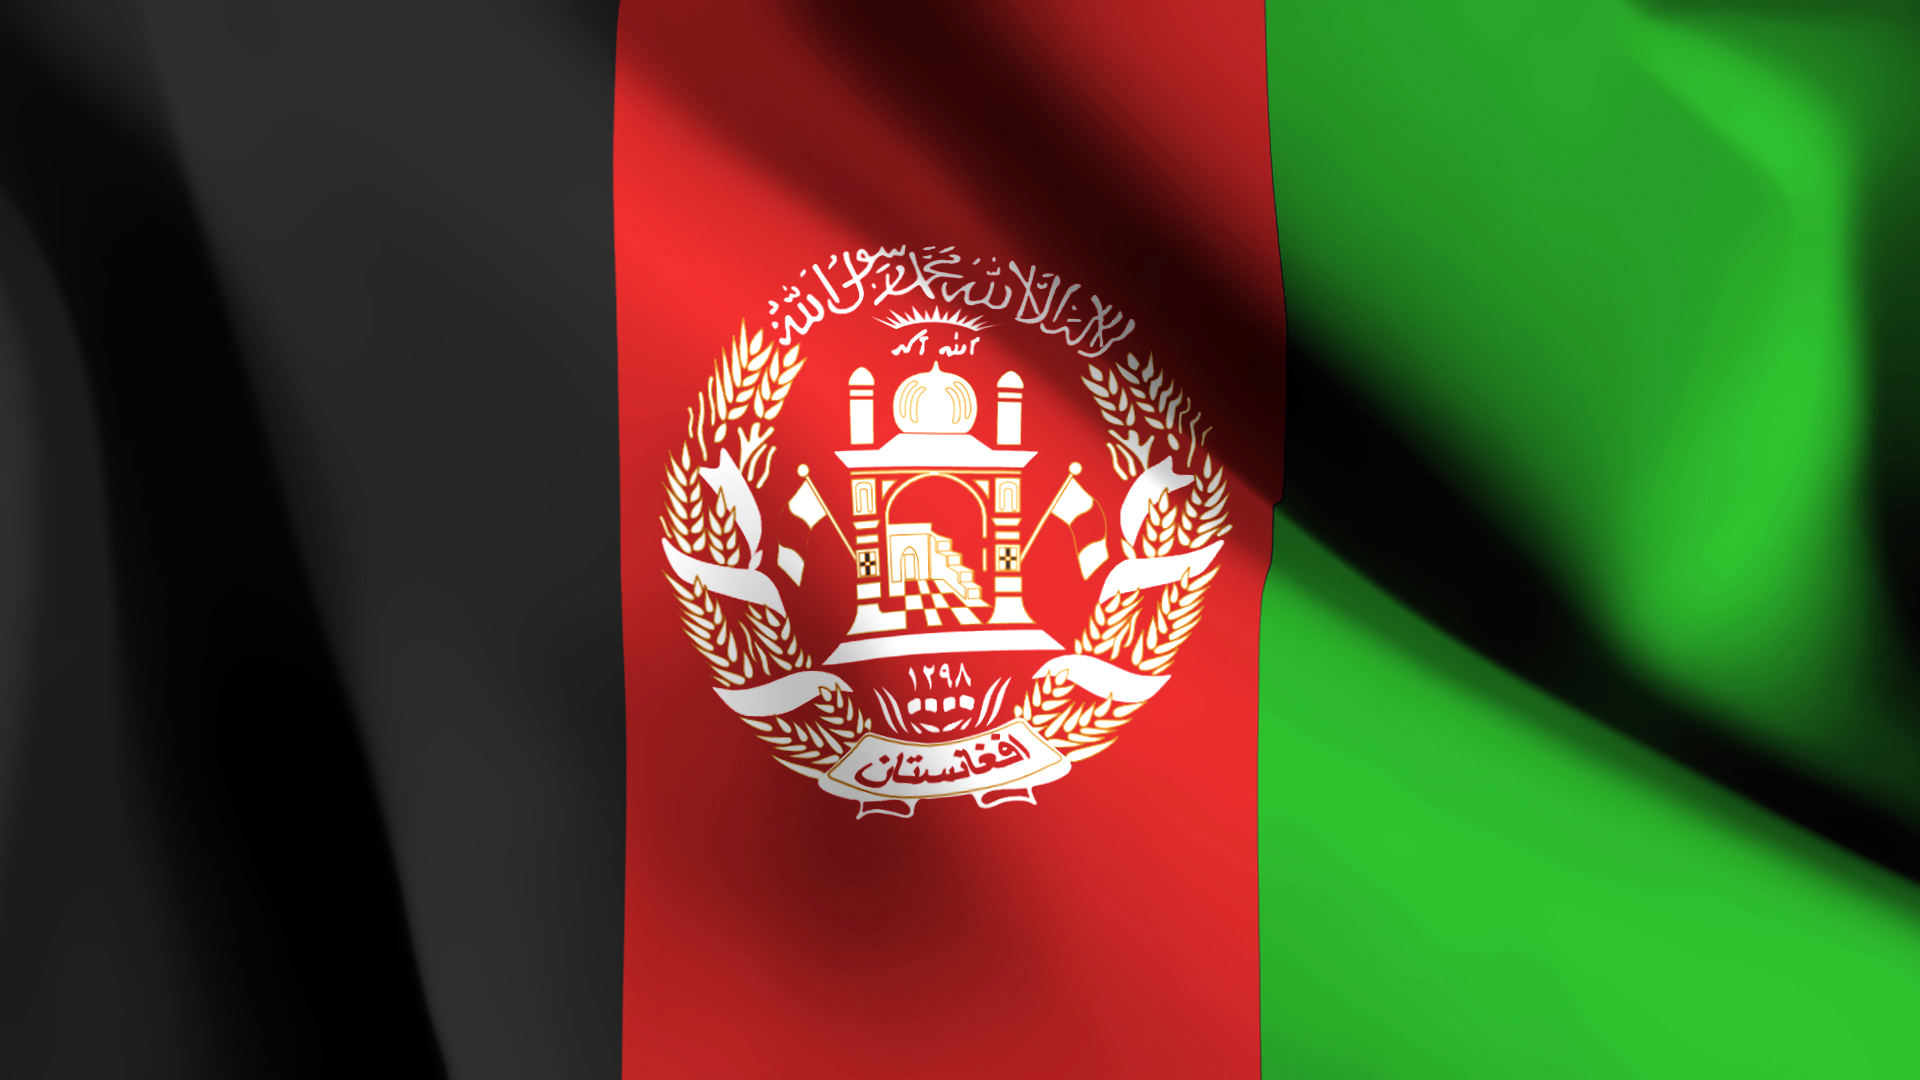 アフガニスタンの国旗 Pc スマートフォンの壁紙 スマートマイズ